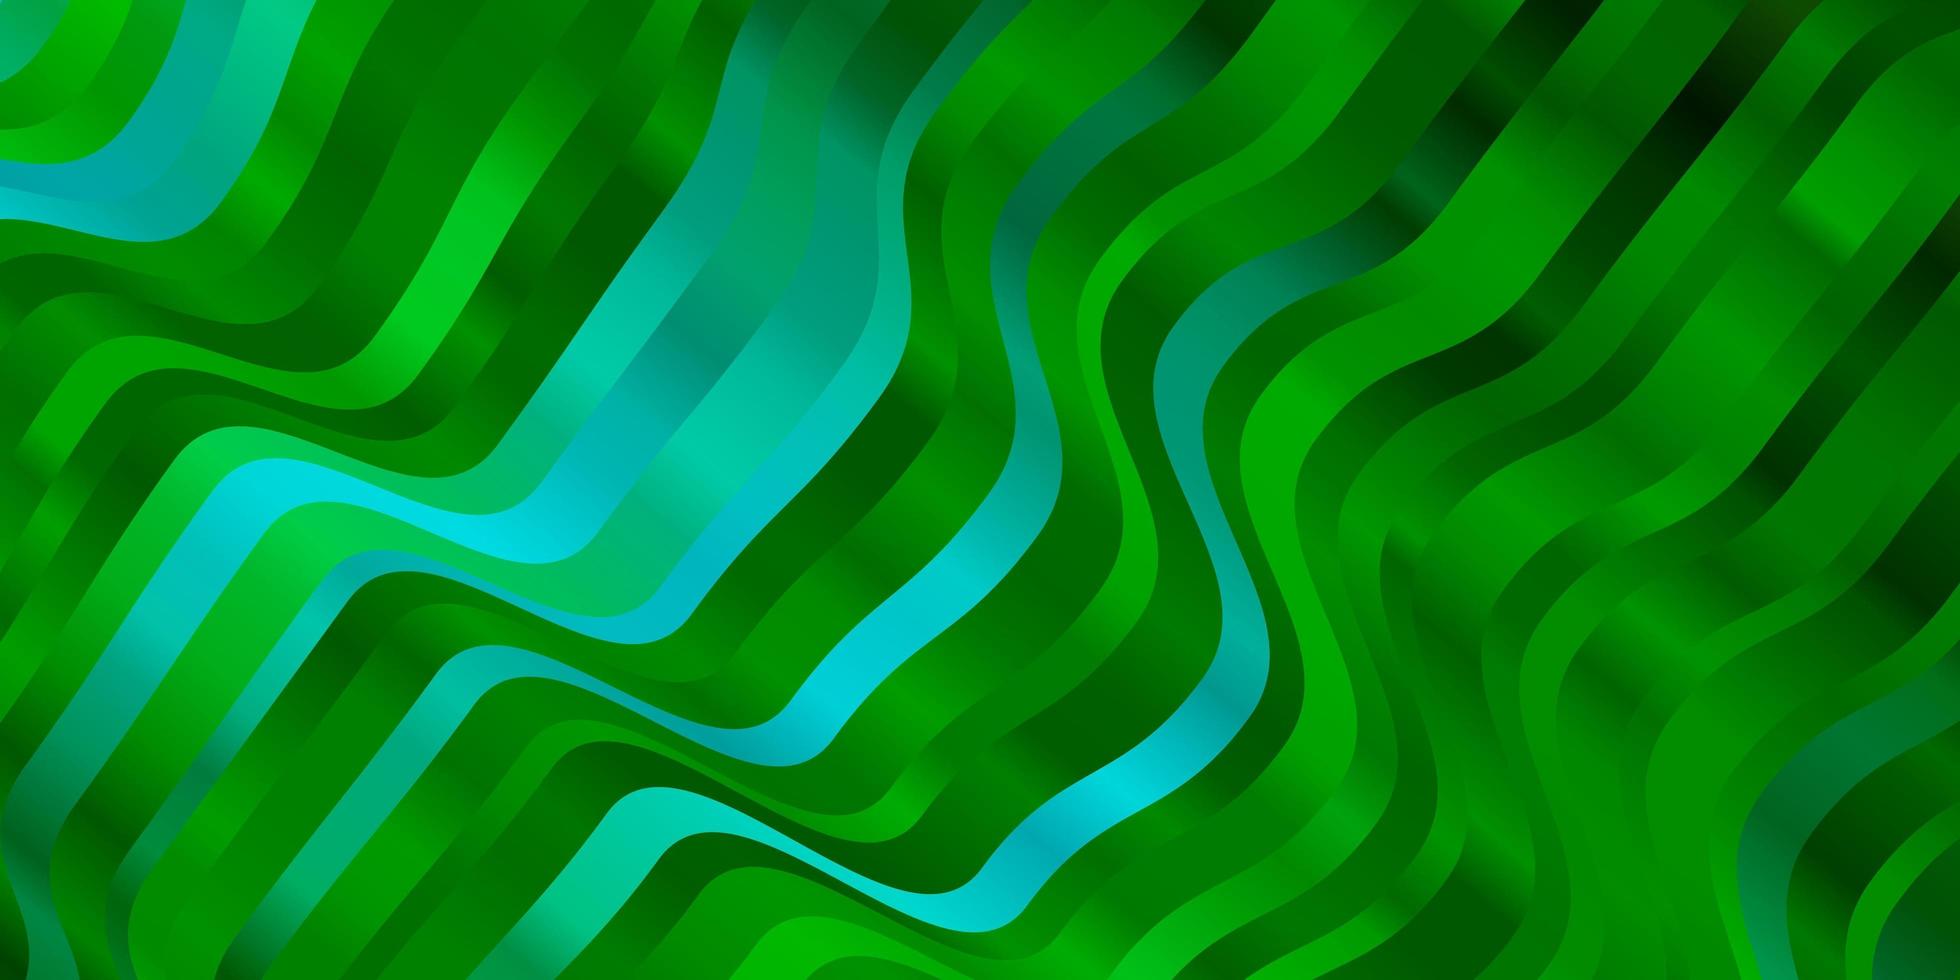 hellblaue, grüne Schablone mit schiefen Linien. vektor